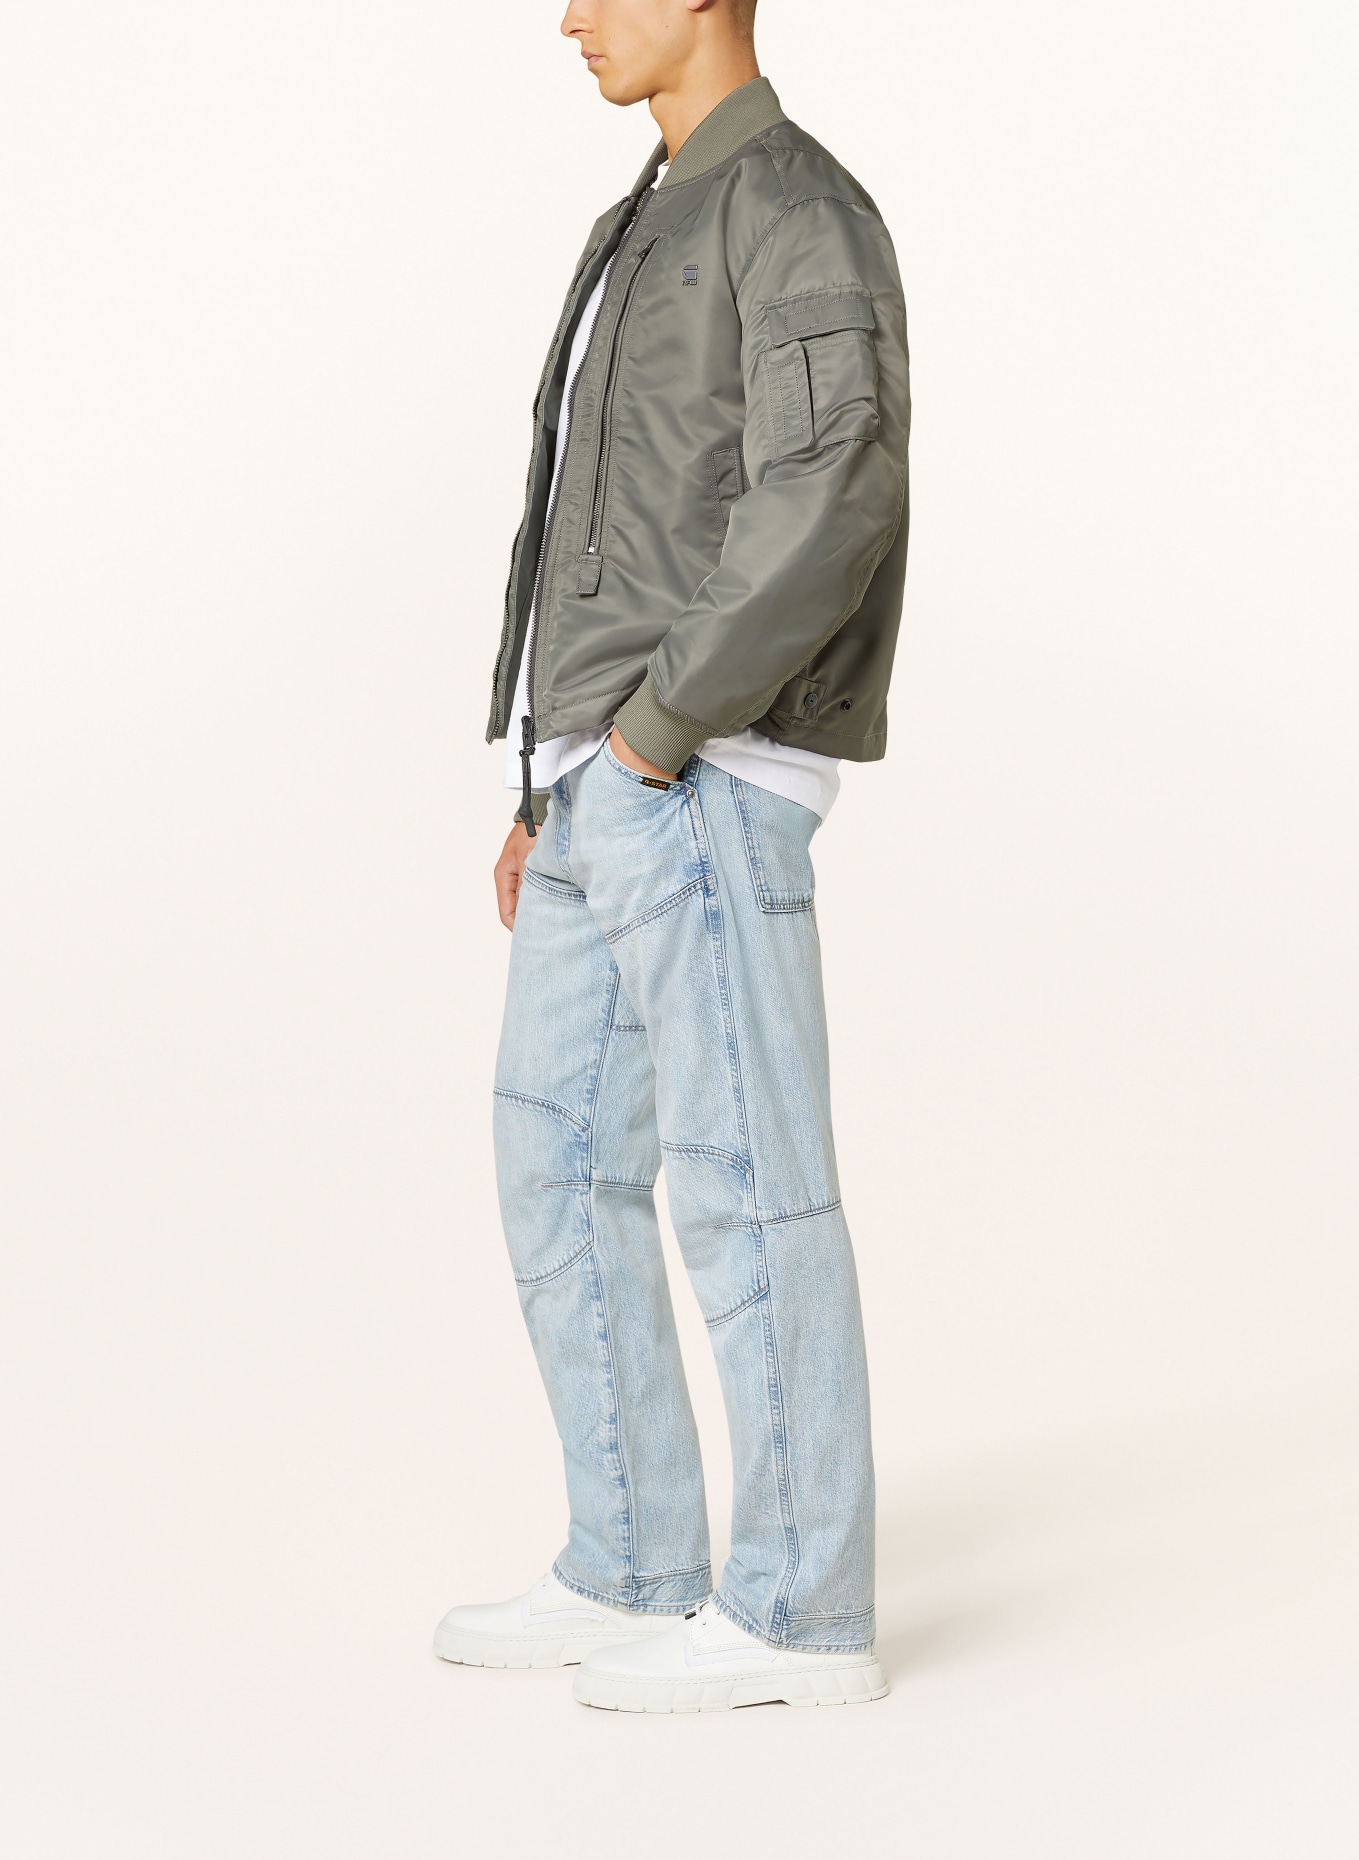 G-Star RAW Jeans 5620 3D Regular Fit, Farbe: G339 sun faded cloudburst (Bild 4)